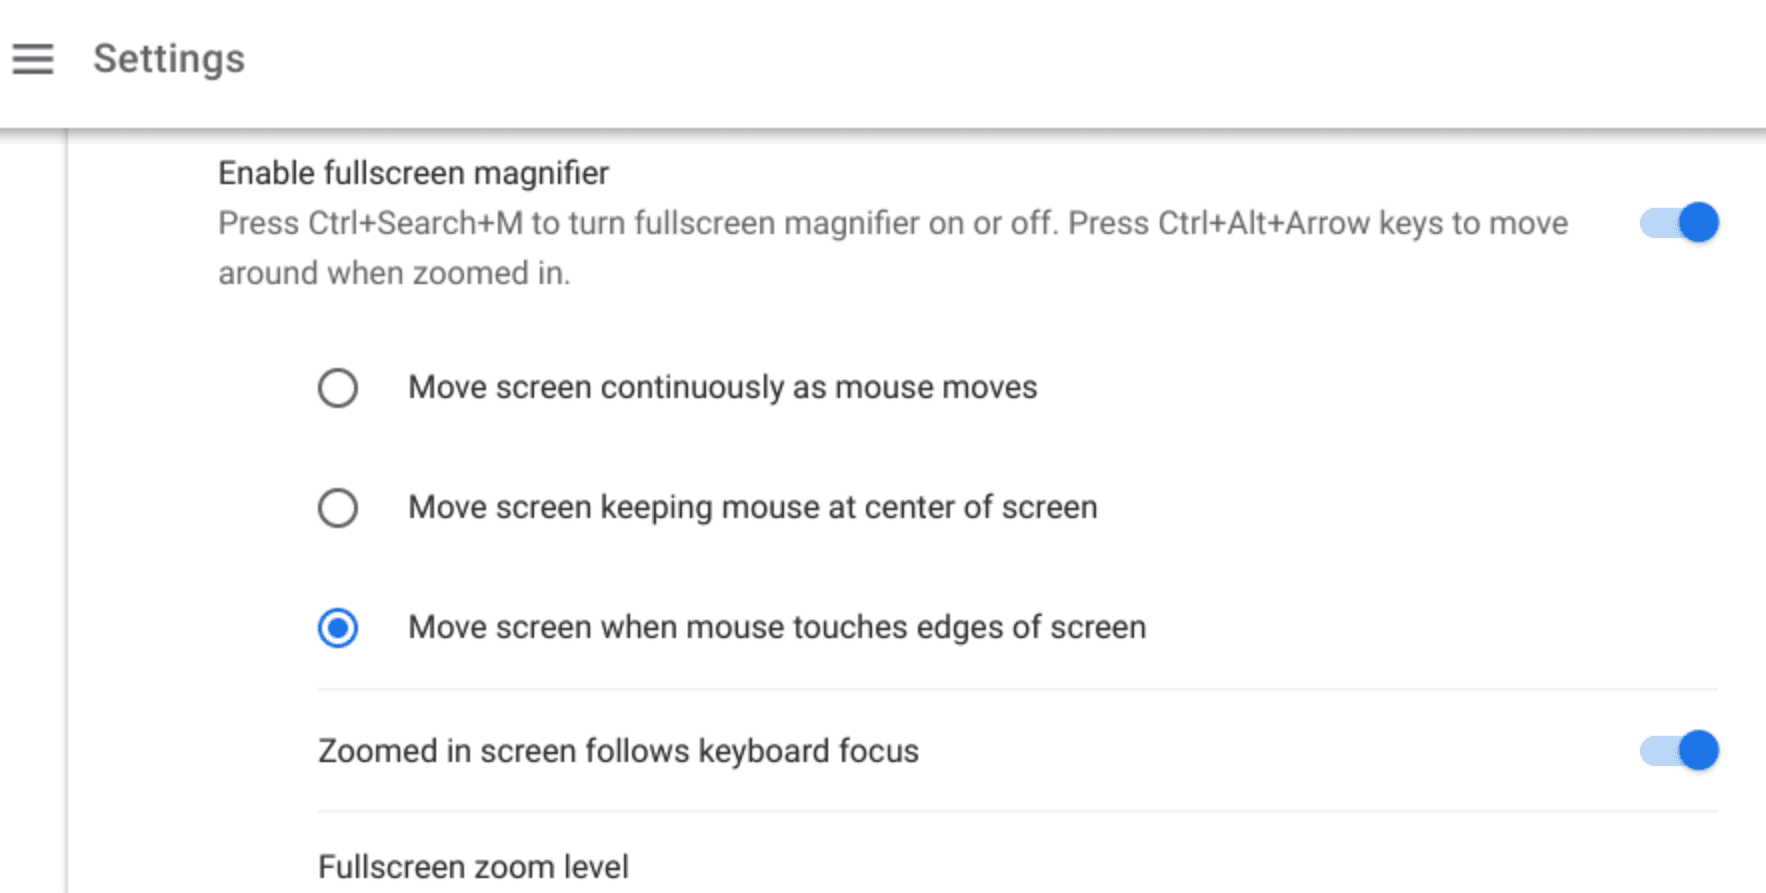 Fullscreen magnifier